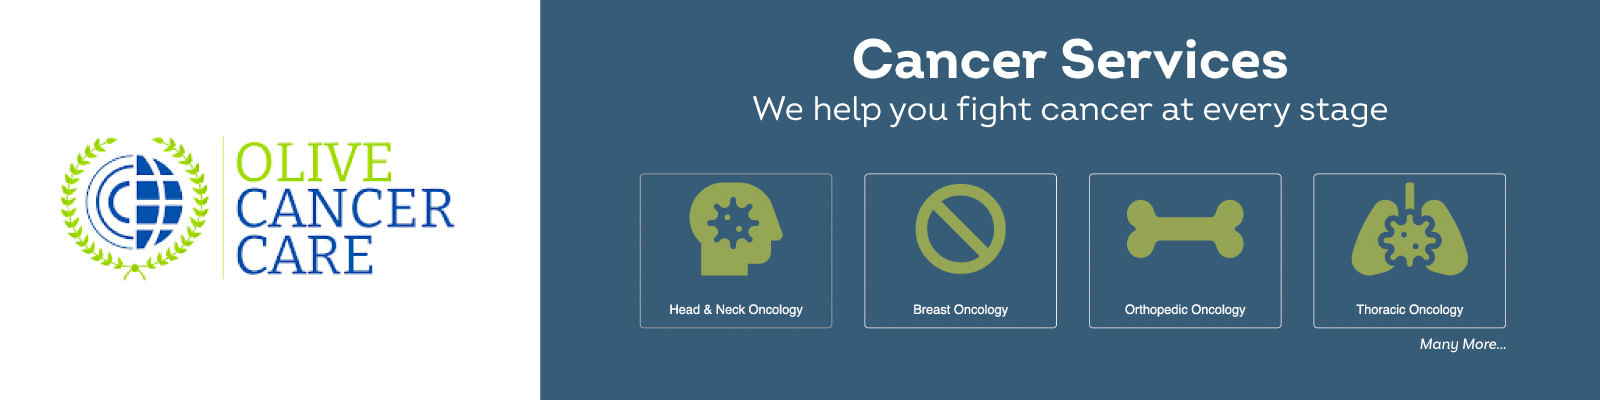 Olive Cancer Care